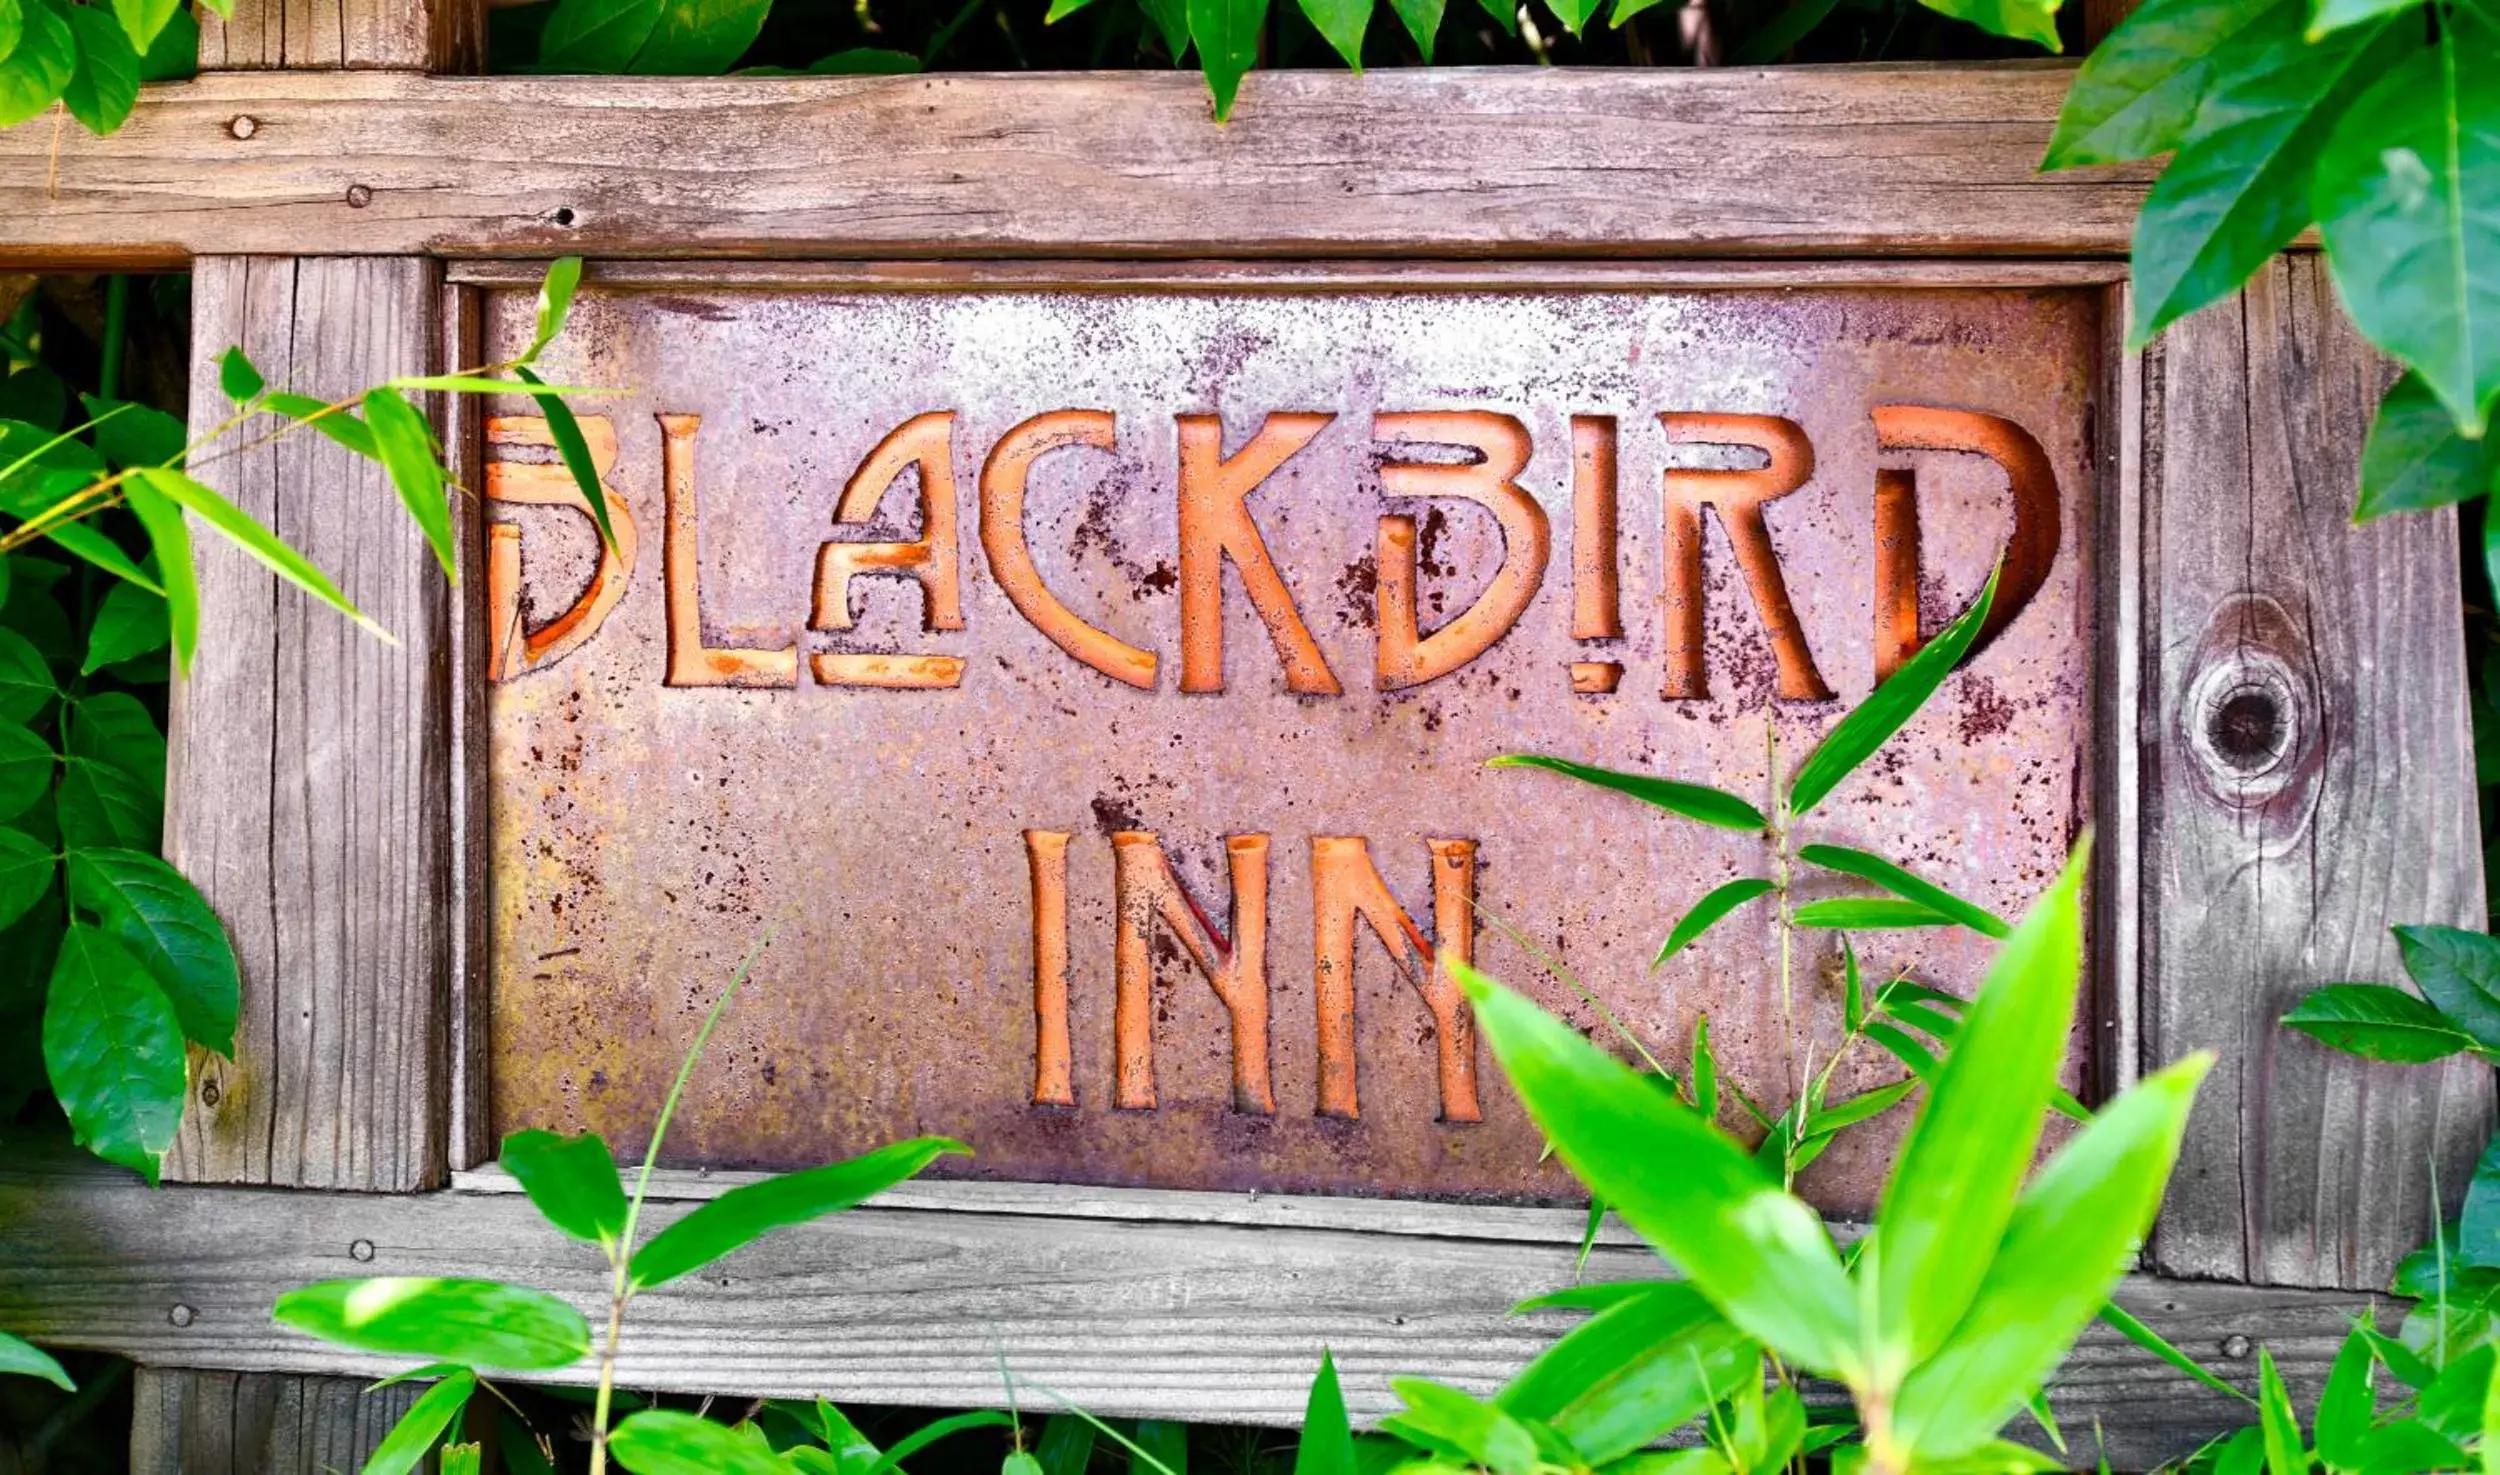 Blackbird Inn